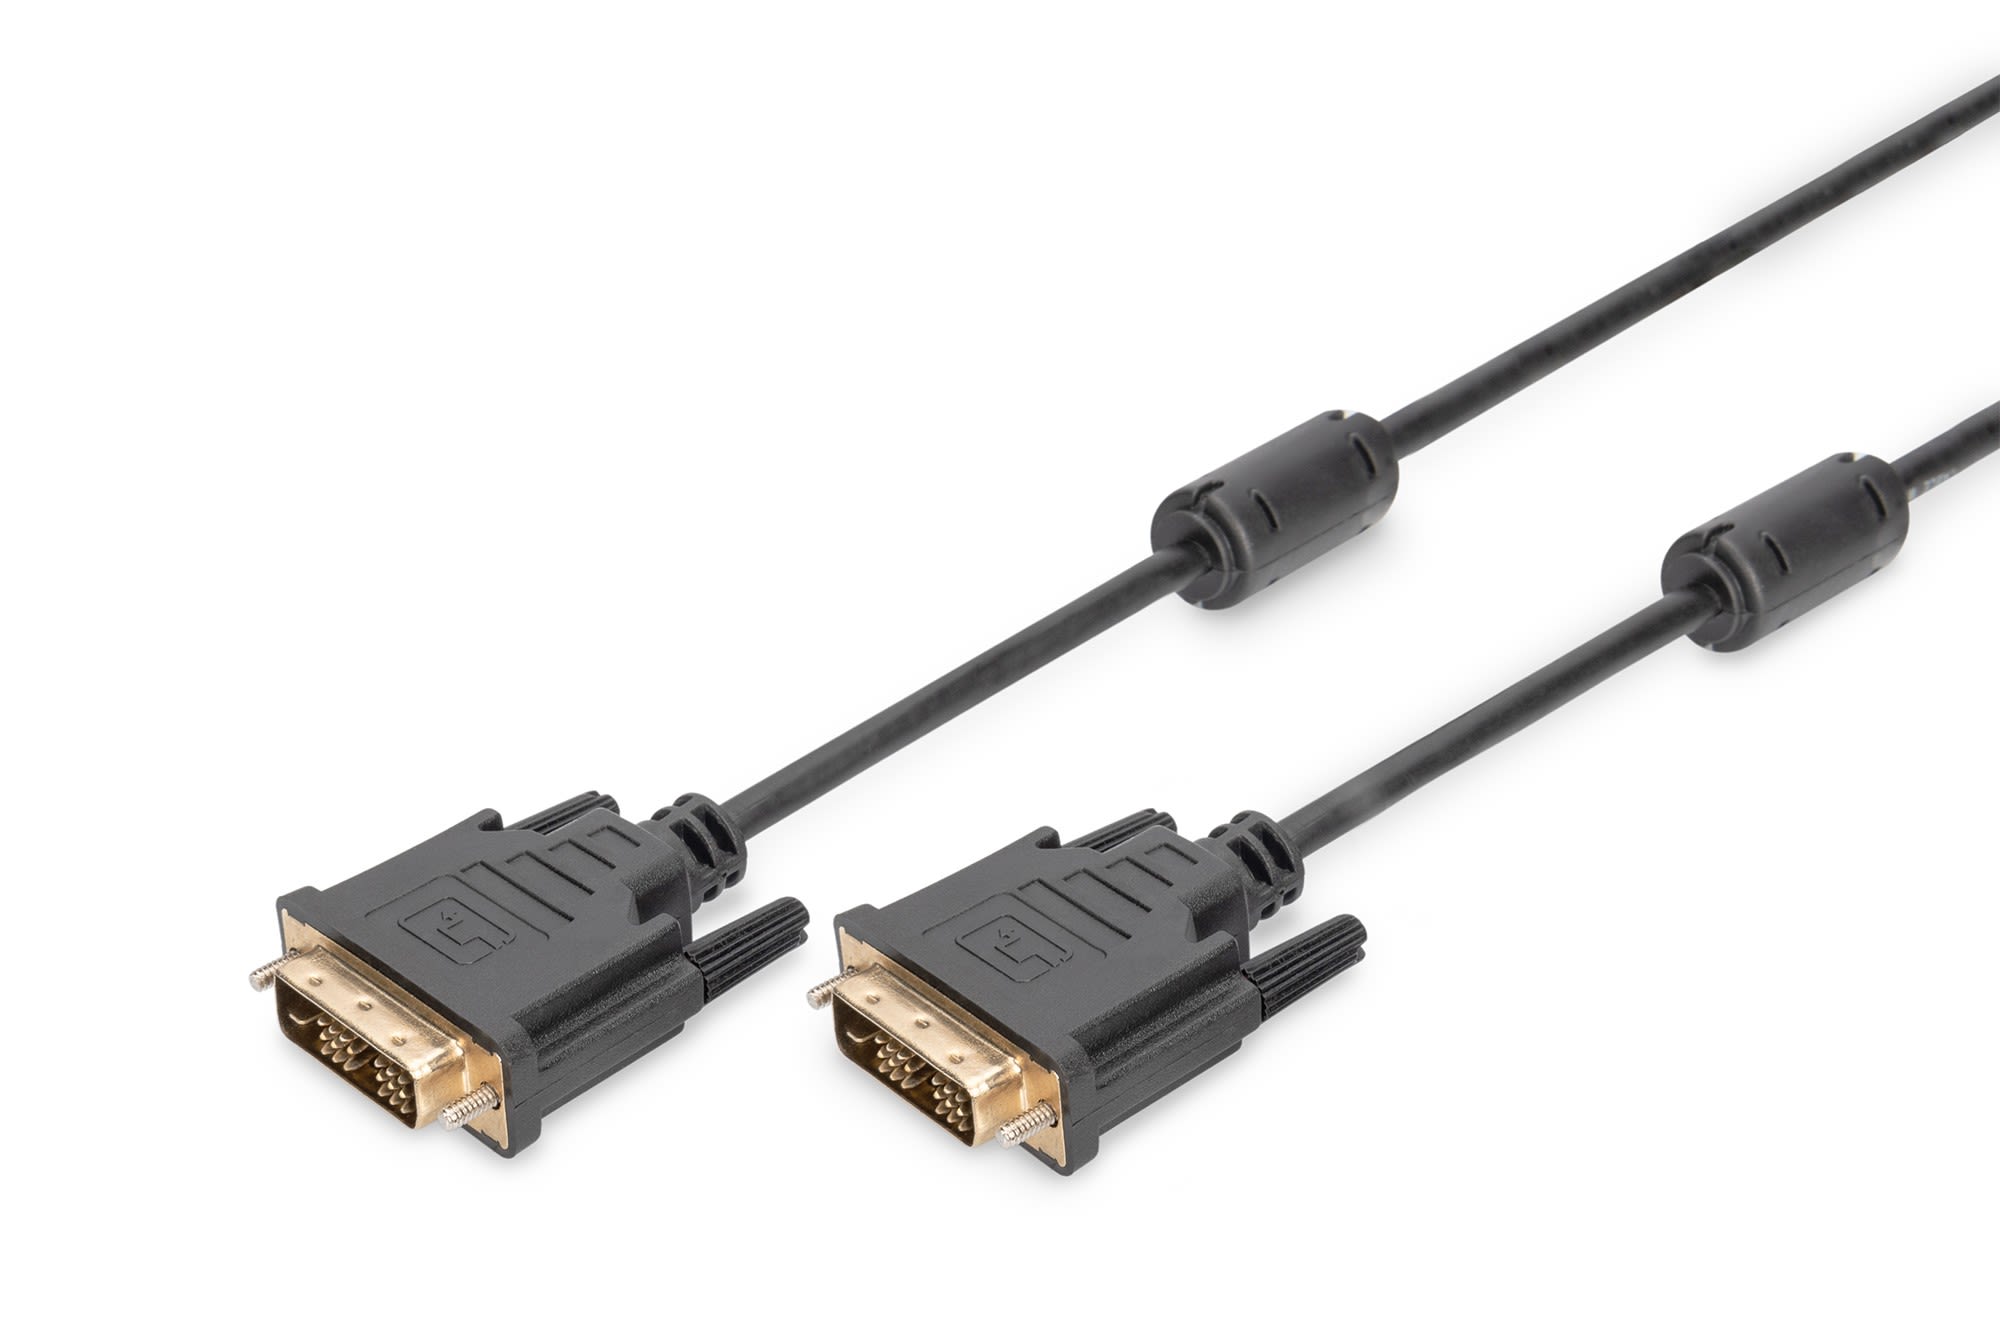 Assmann Electronic - DVI connection cable, DVI(18+1), 2x ferrit M-M, 5.0m, DVI-D Single Link, bl